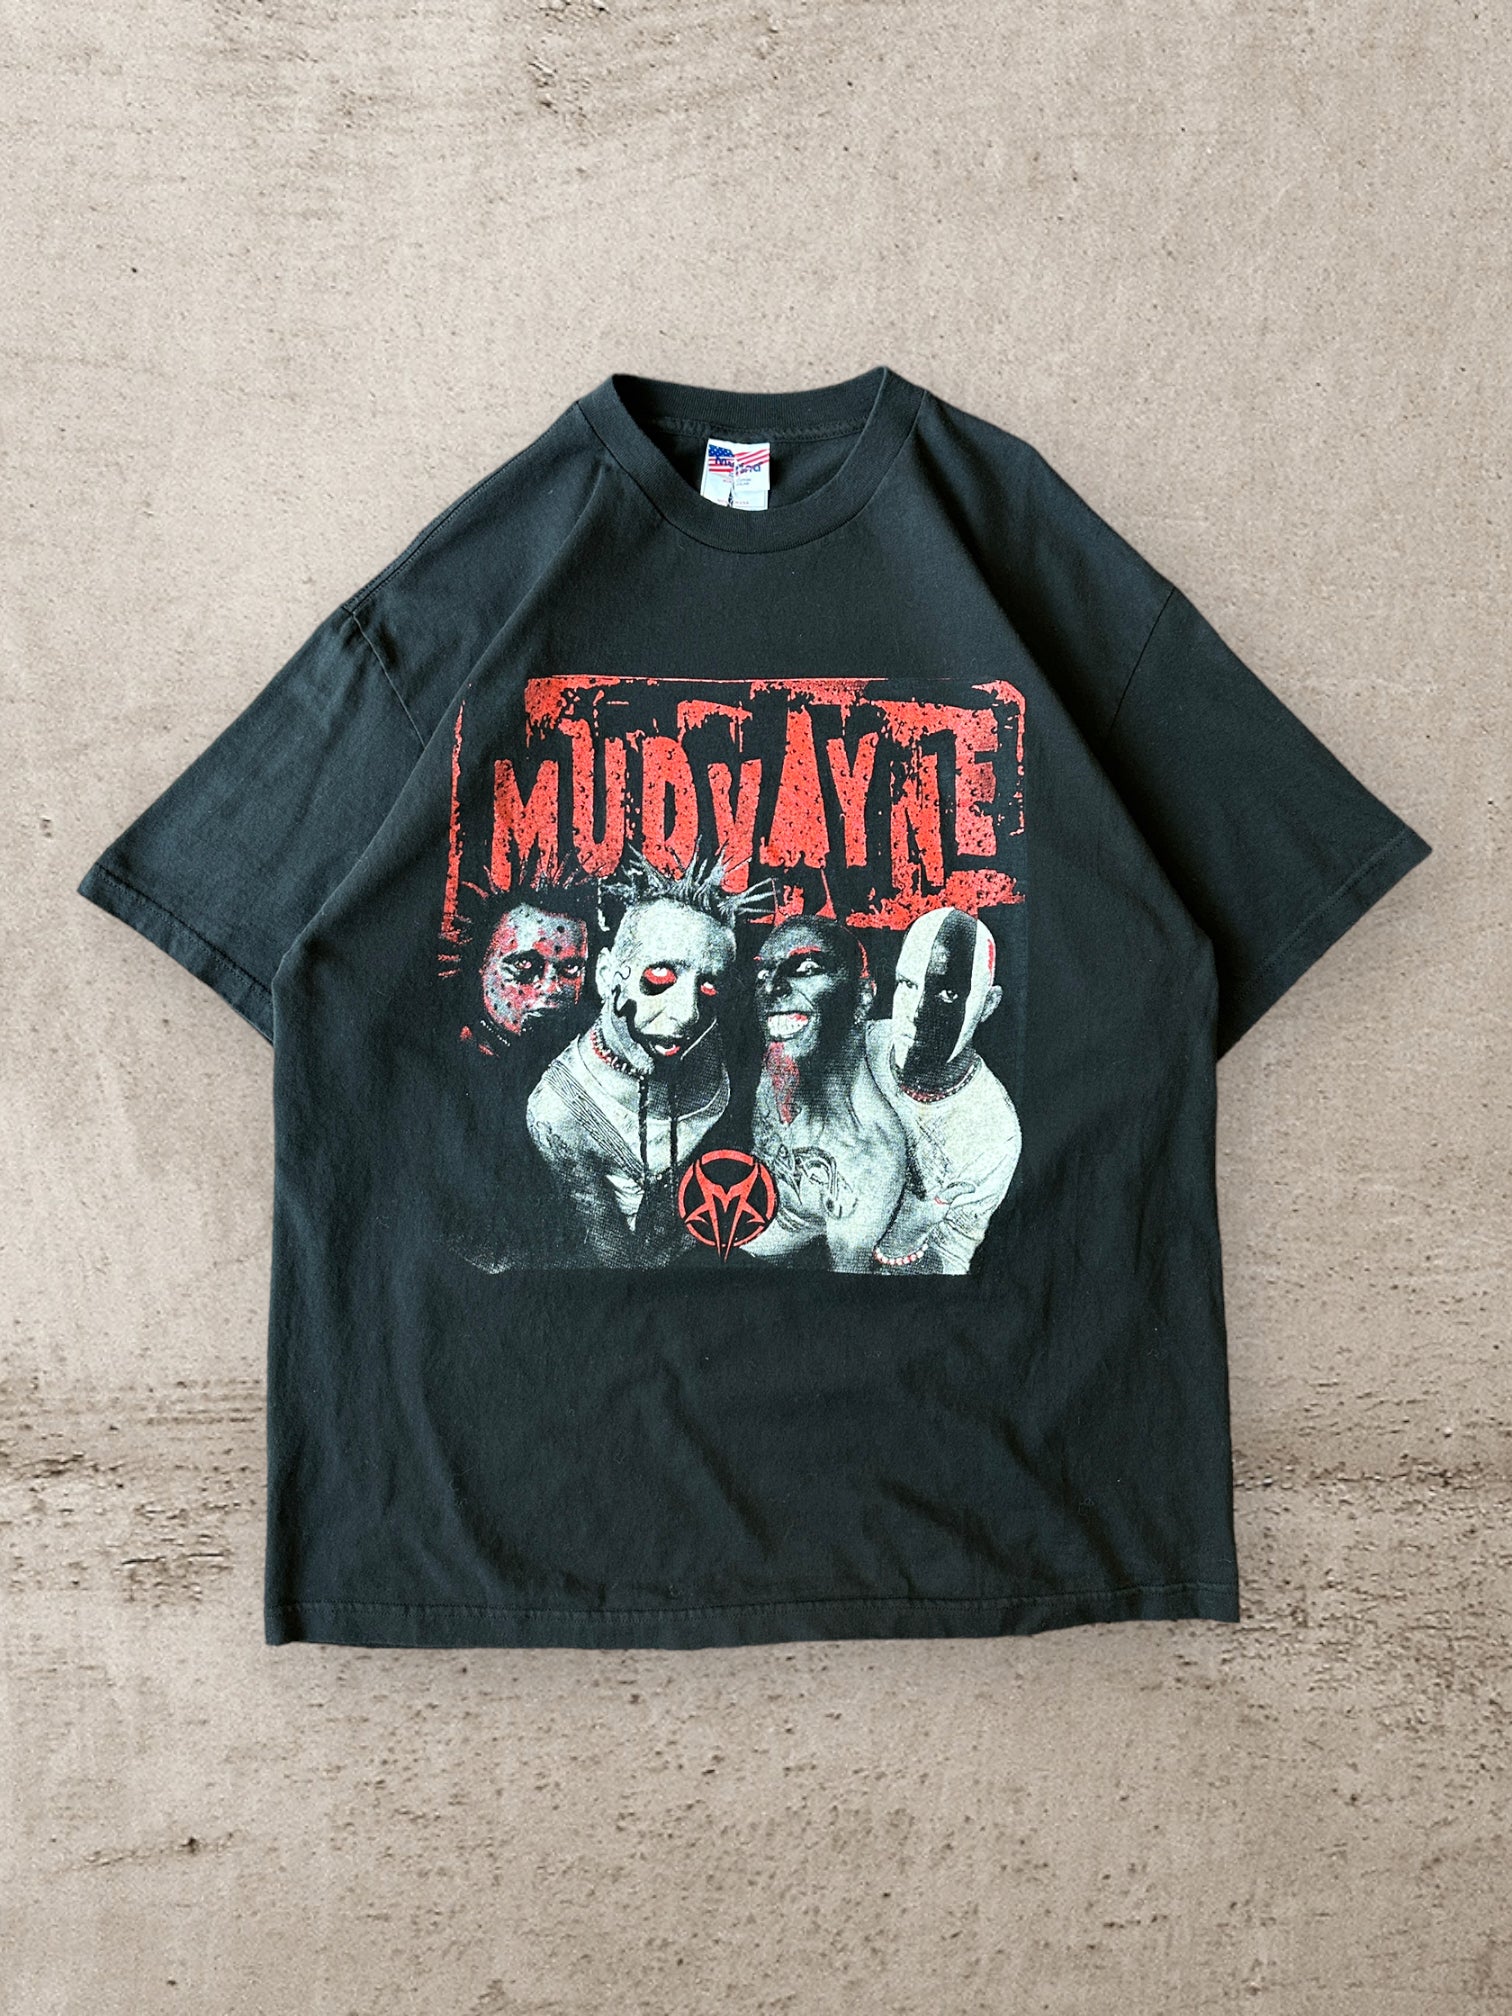 00s Mud Vayne Metal Rock Band T-Shirt - XL